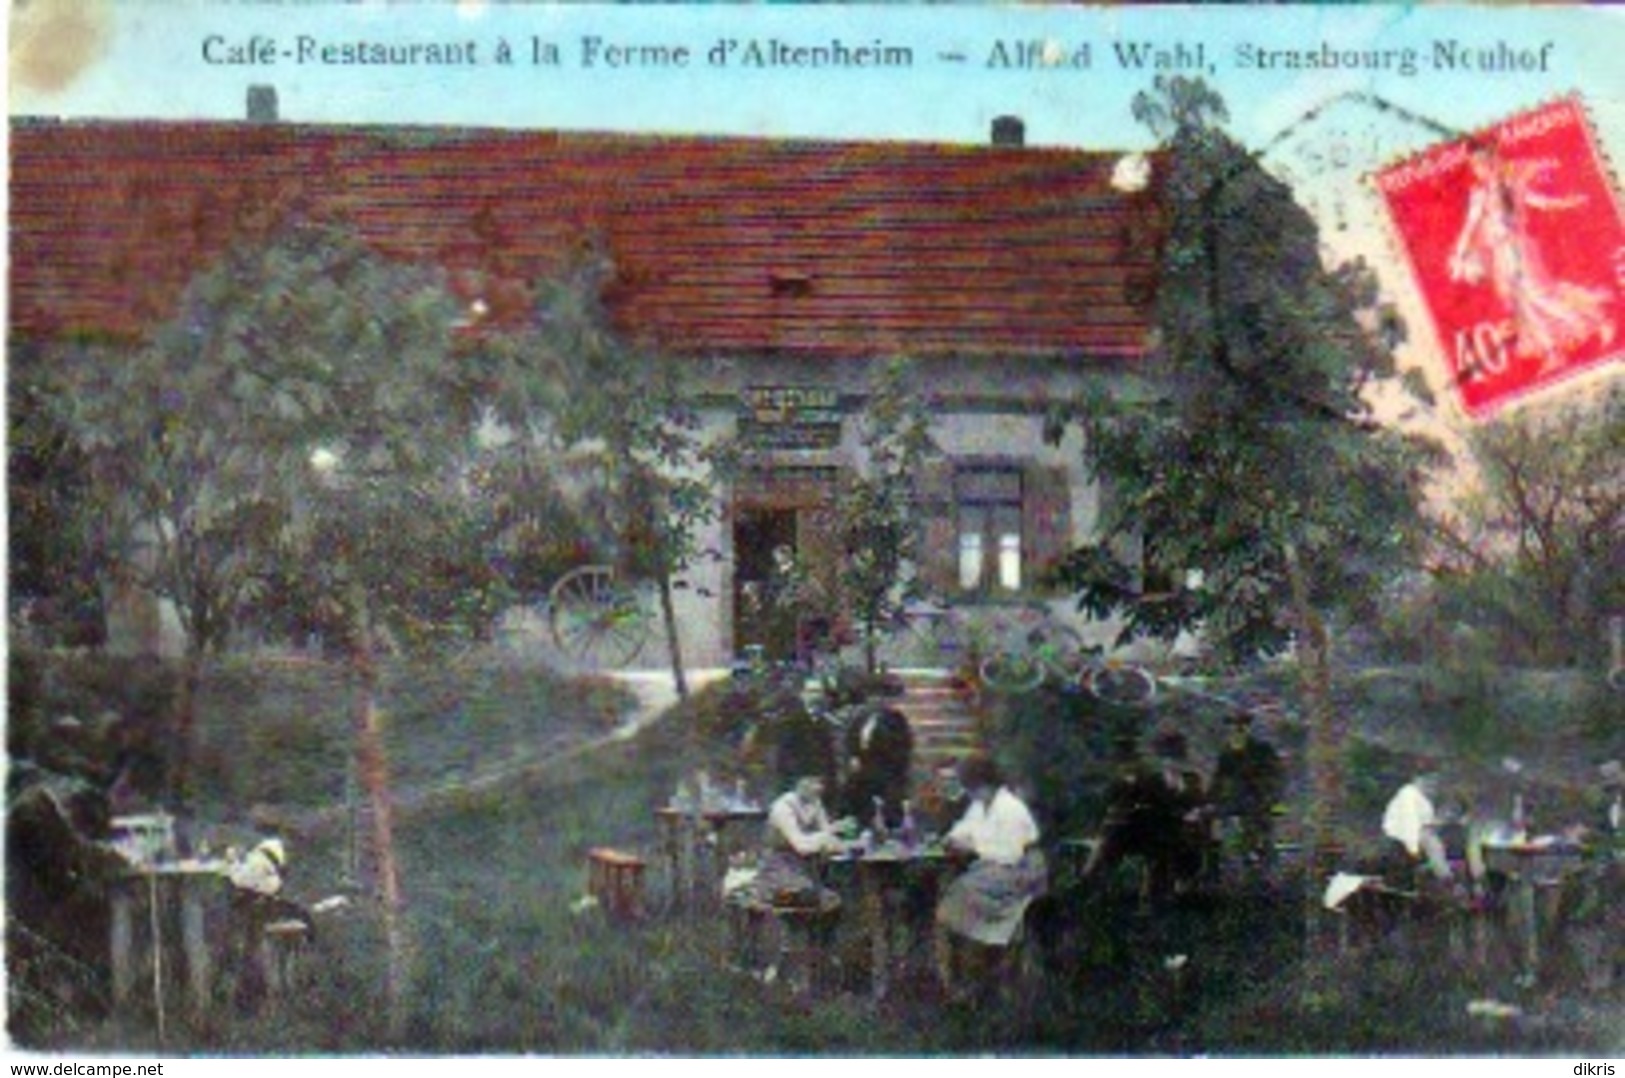 67-D'ALTENHEIM- A LA FERME CAFÉ RESTAURANT - Strasbourg